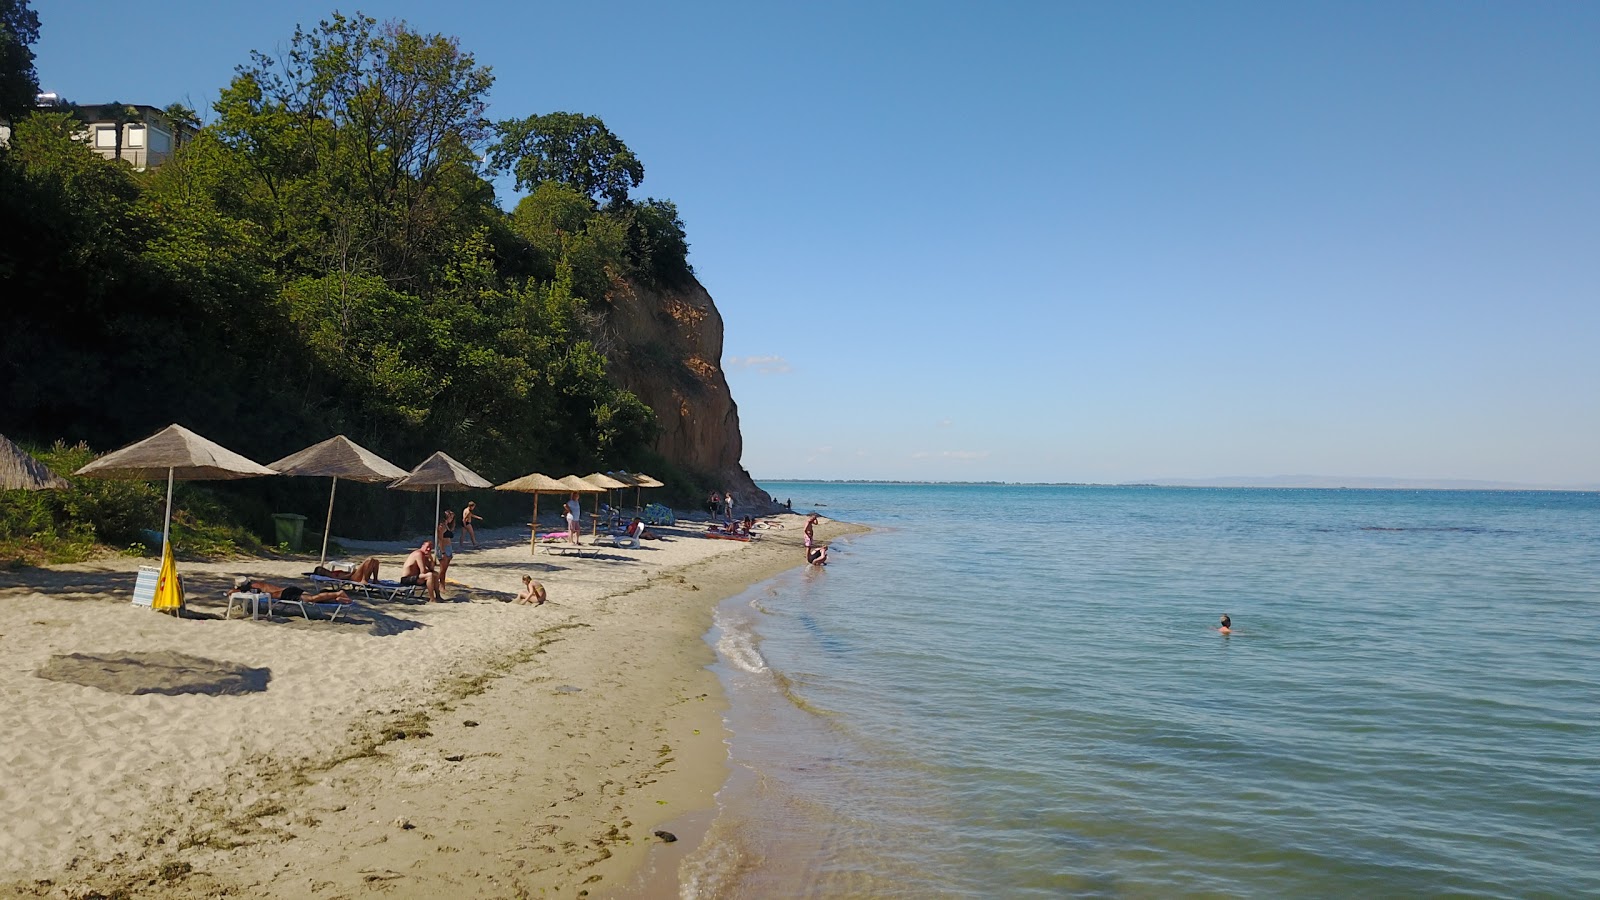 Fotografie cu Agiannis beach cu o suprafață de nisip gri